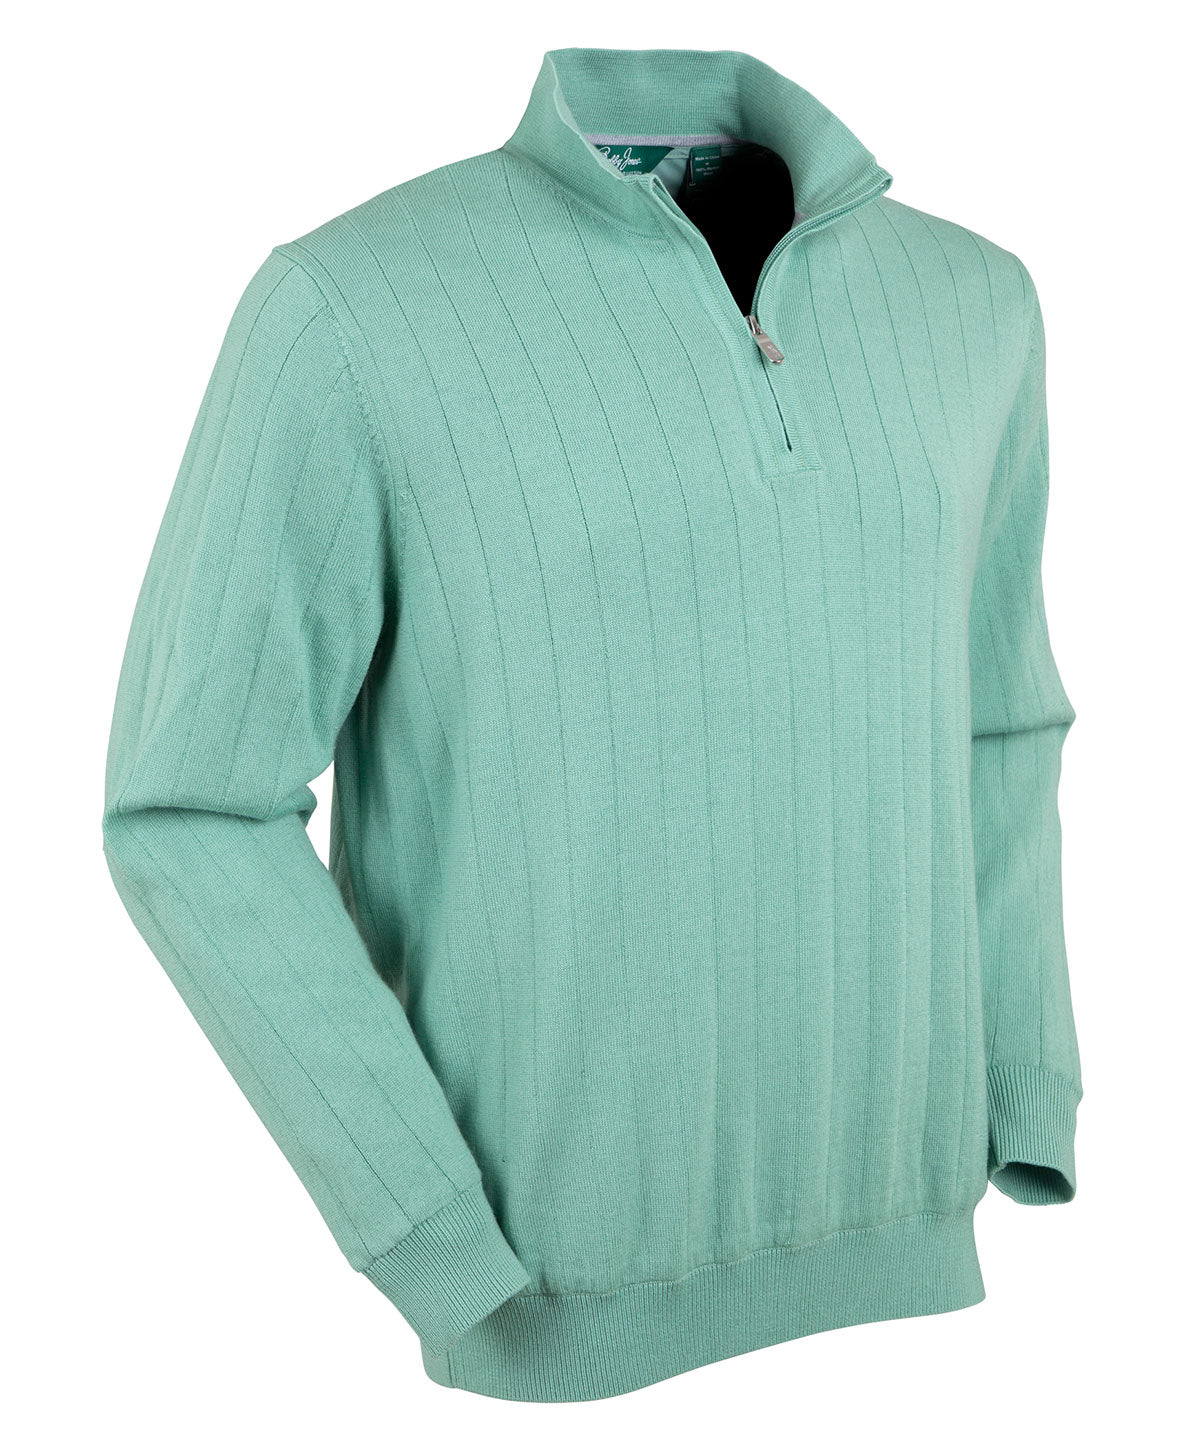 MERIWOOL Merino Wool Men's Half Zip Mock Turtleneck Pullover Sweater -  Small 